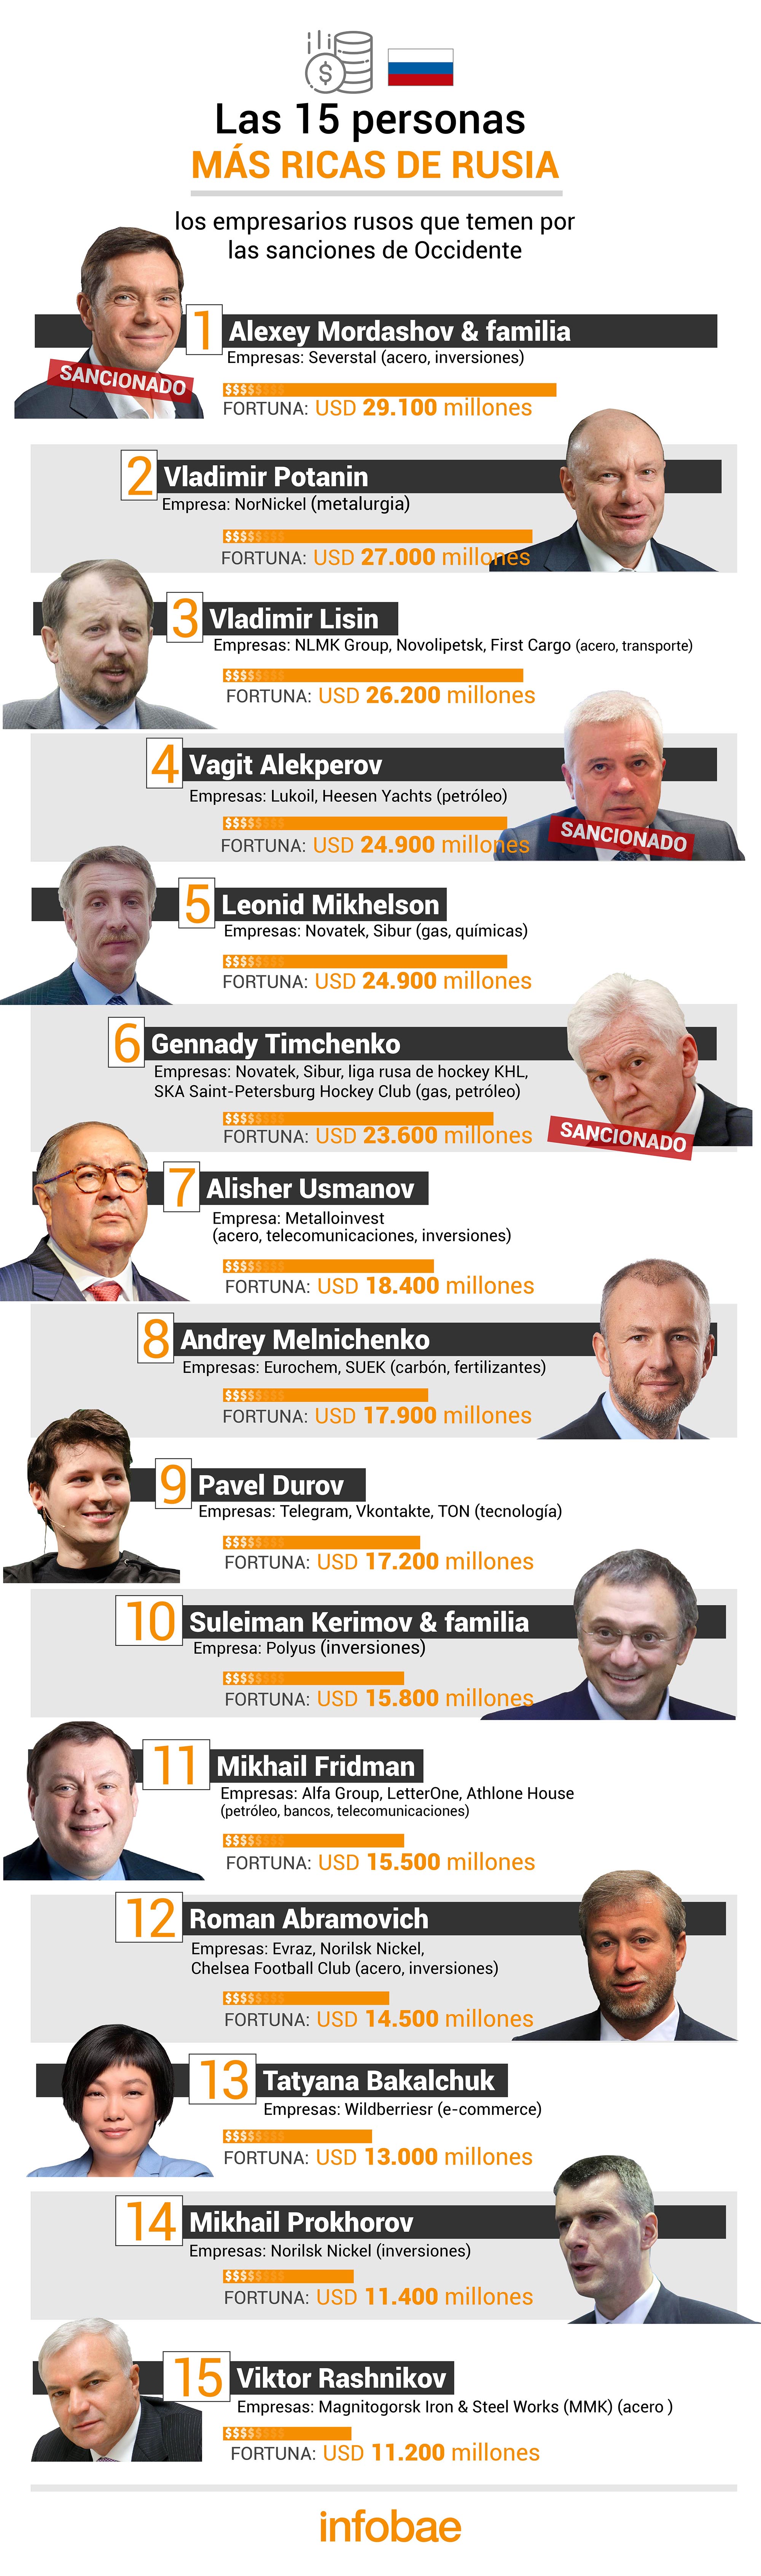 Las 15 personas más ricas de Rusia 